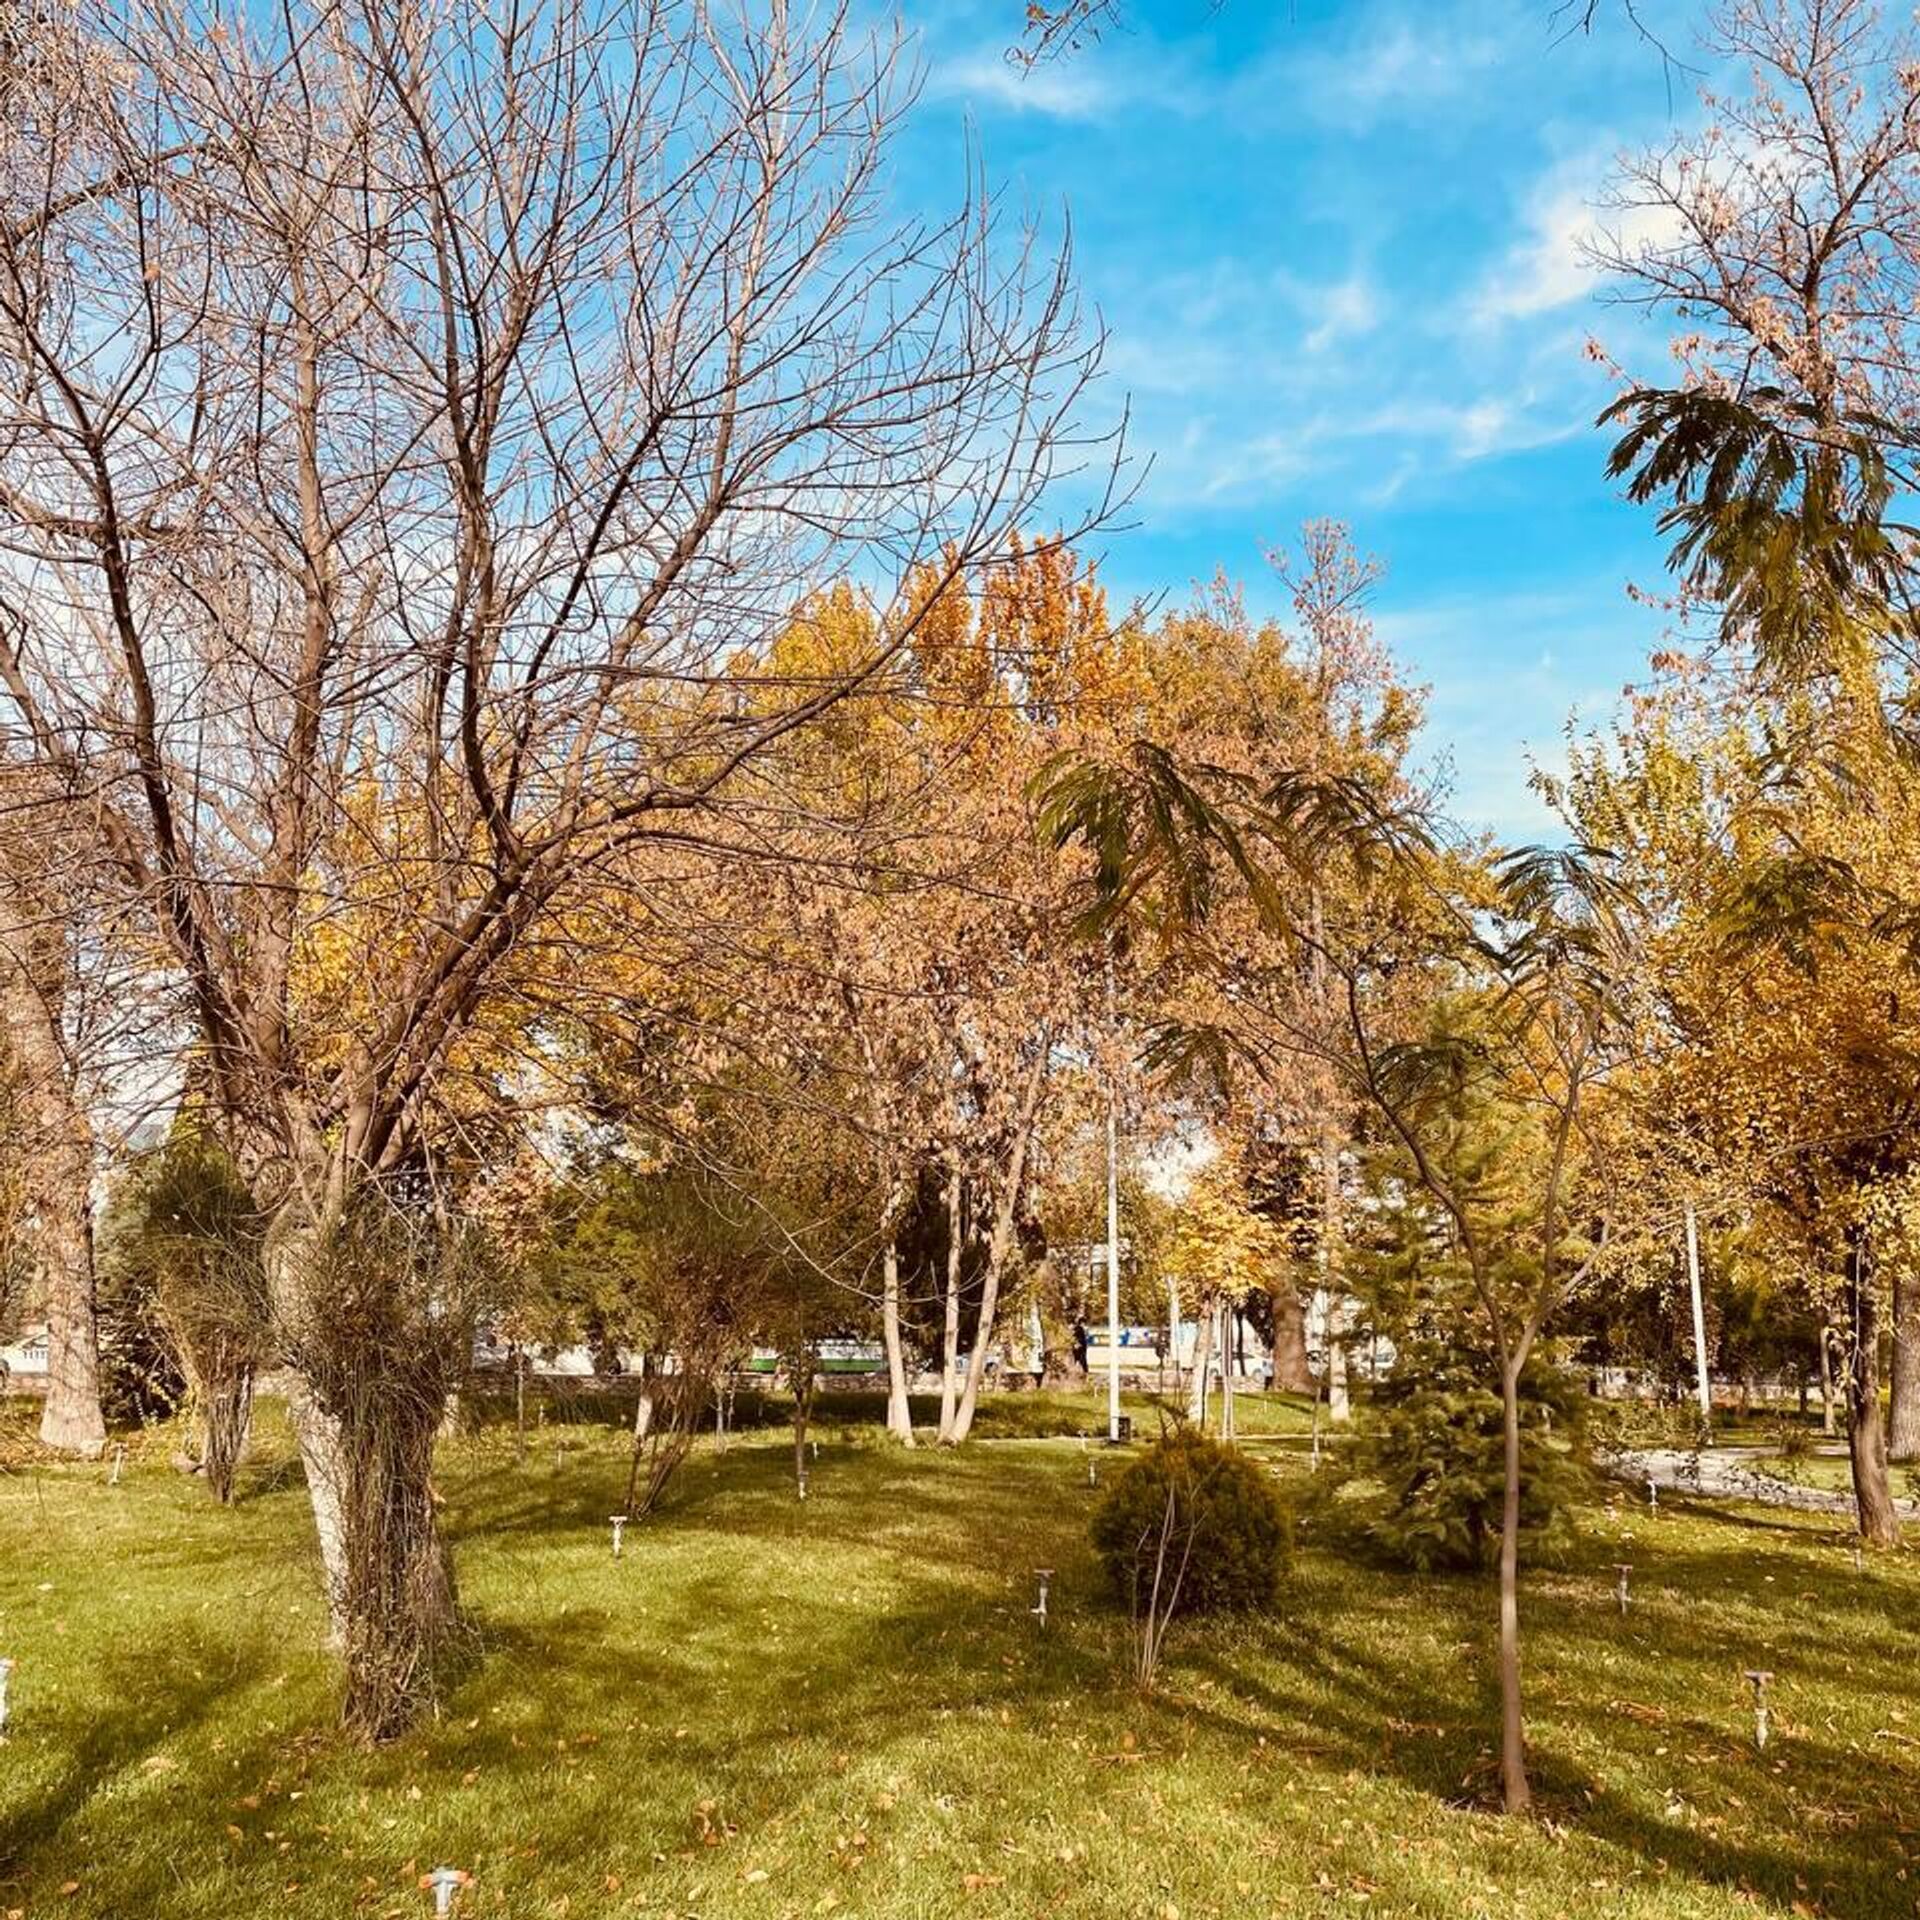 Погода в душанбе в апреле. Осень в Таджикистане фото. Таджикистан питомниками деревьев. Бехи дерево Таджикистана. Окружающая среда Душанбе.